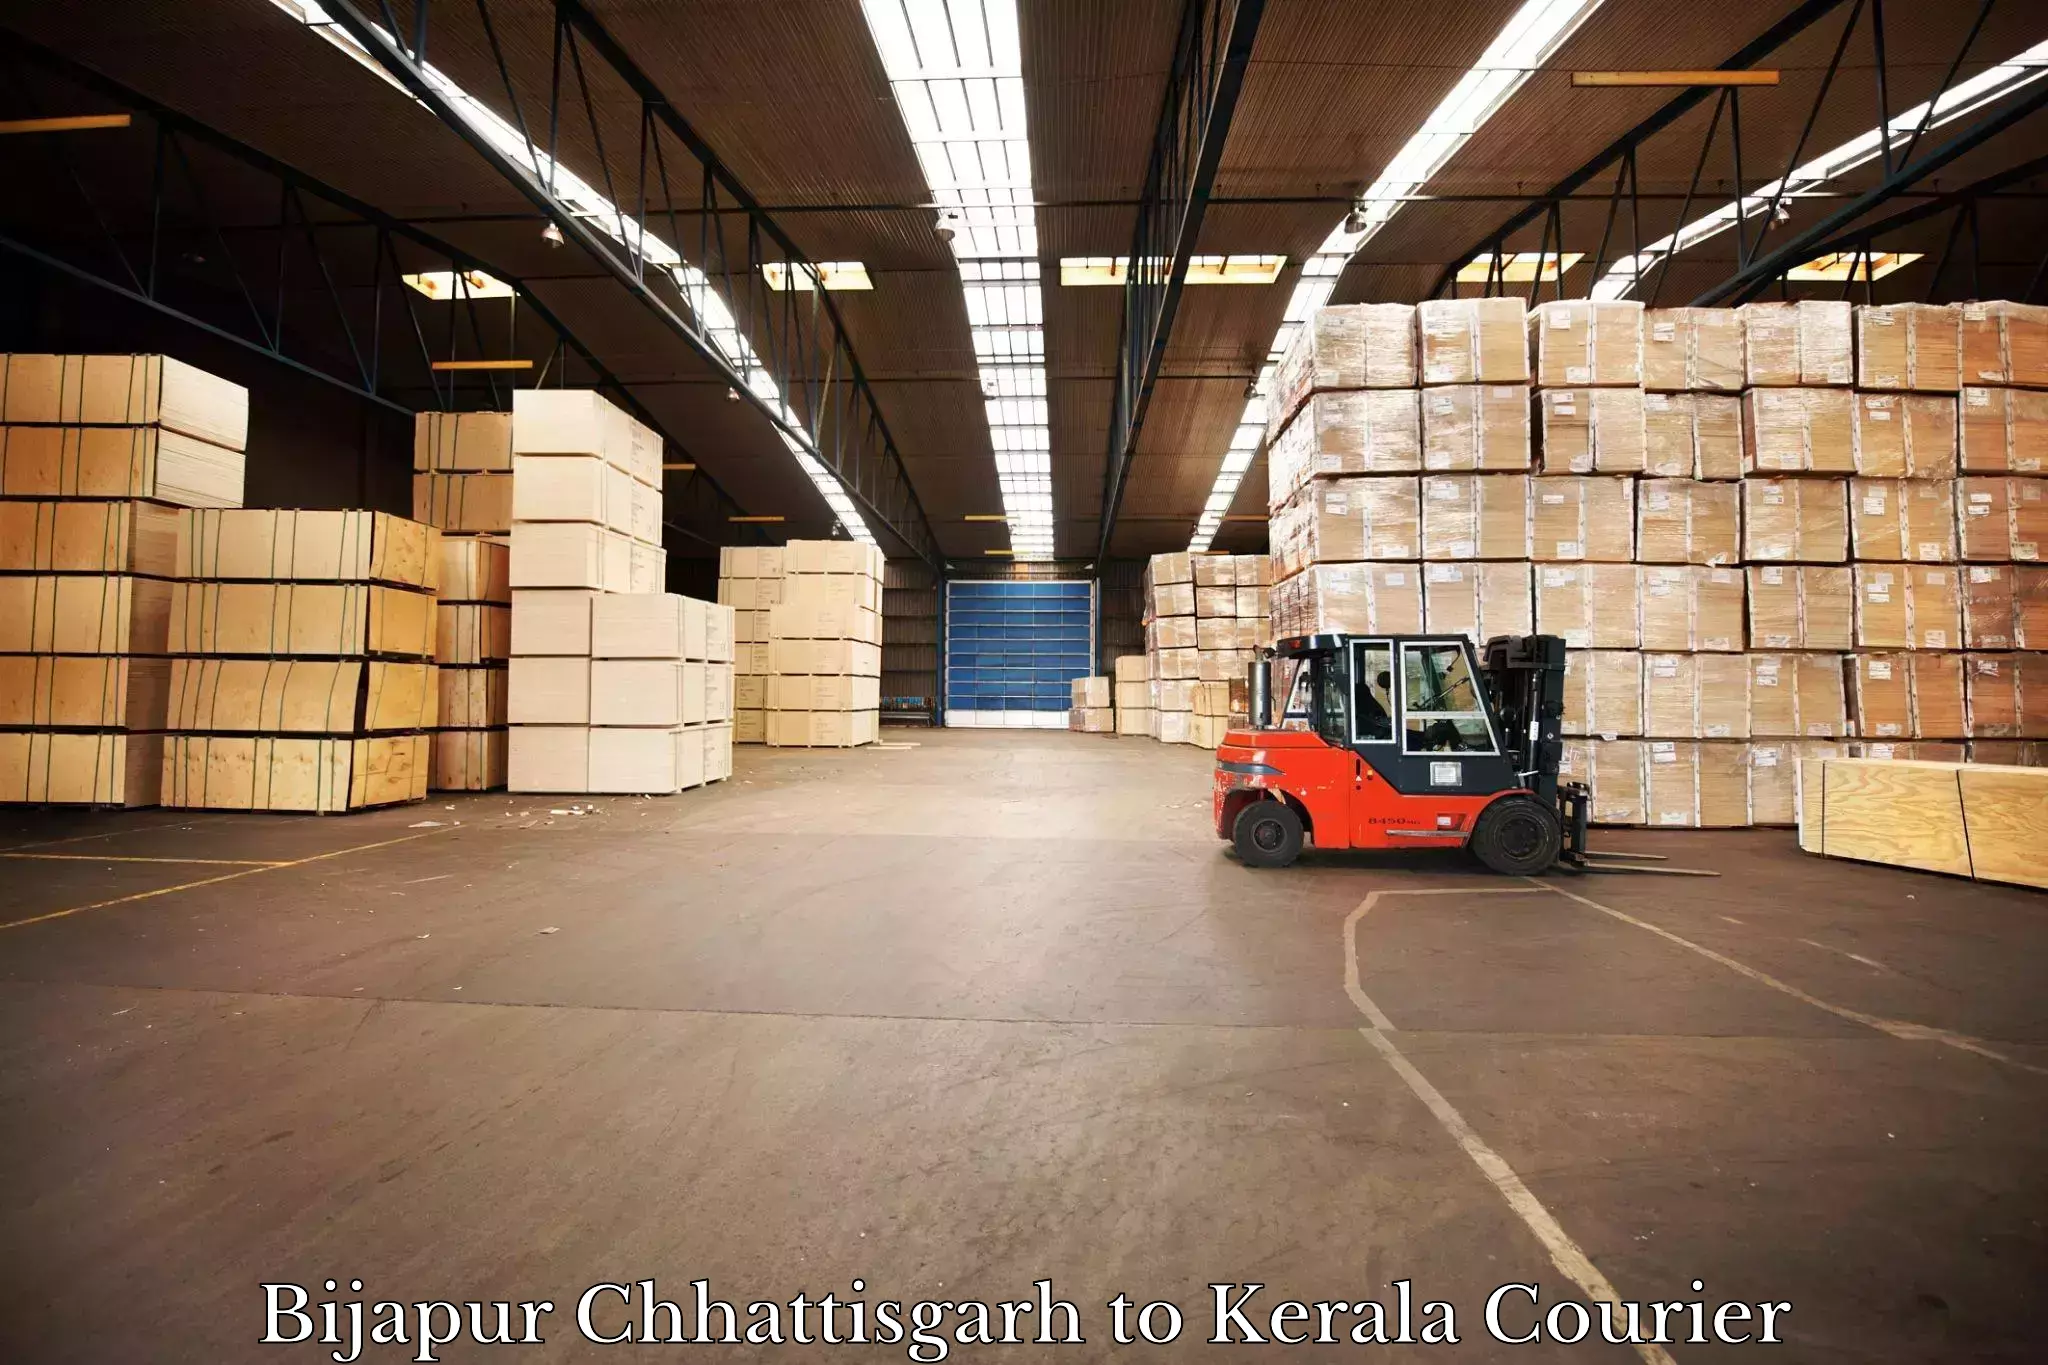 Business delivery service Bijapur Chhattisgarh to Kerala